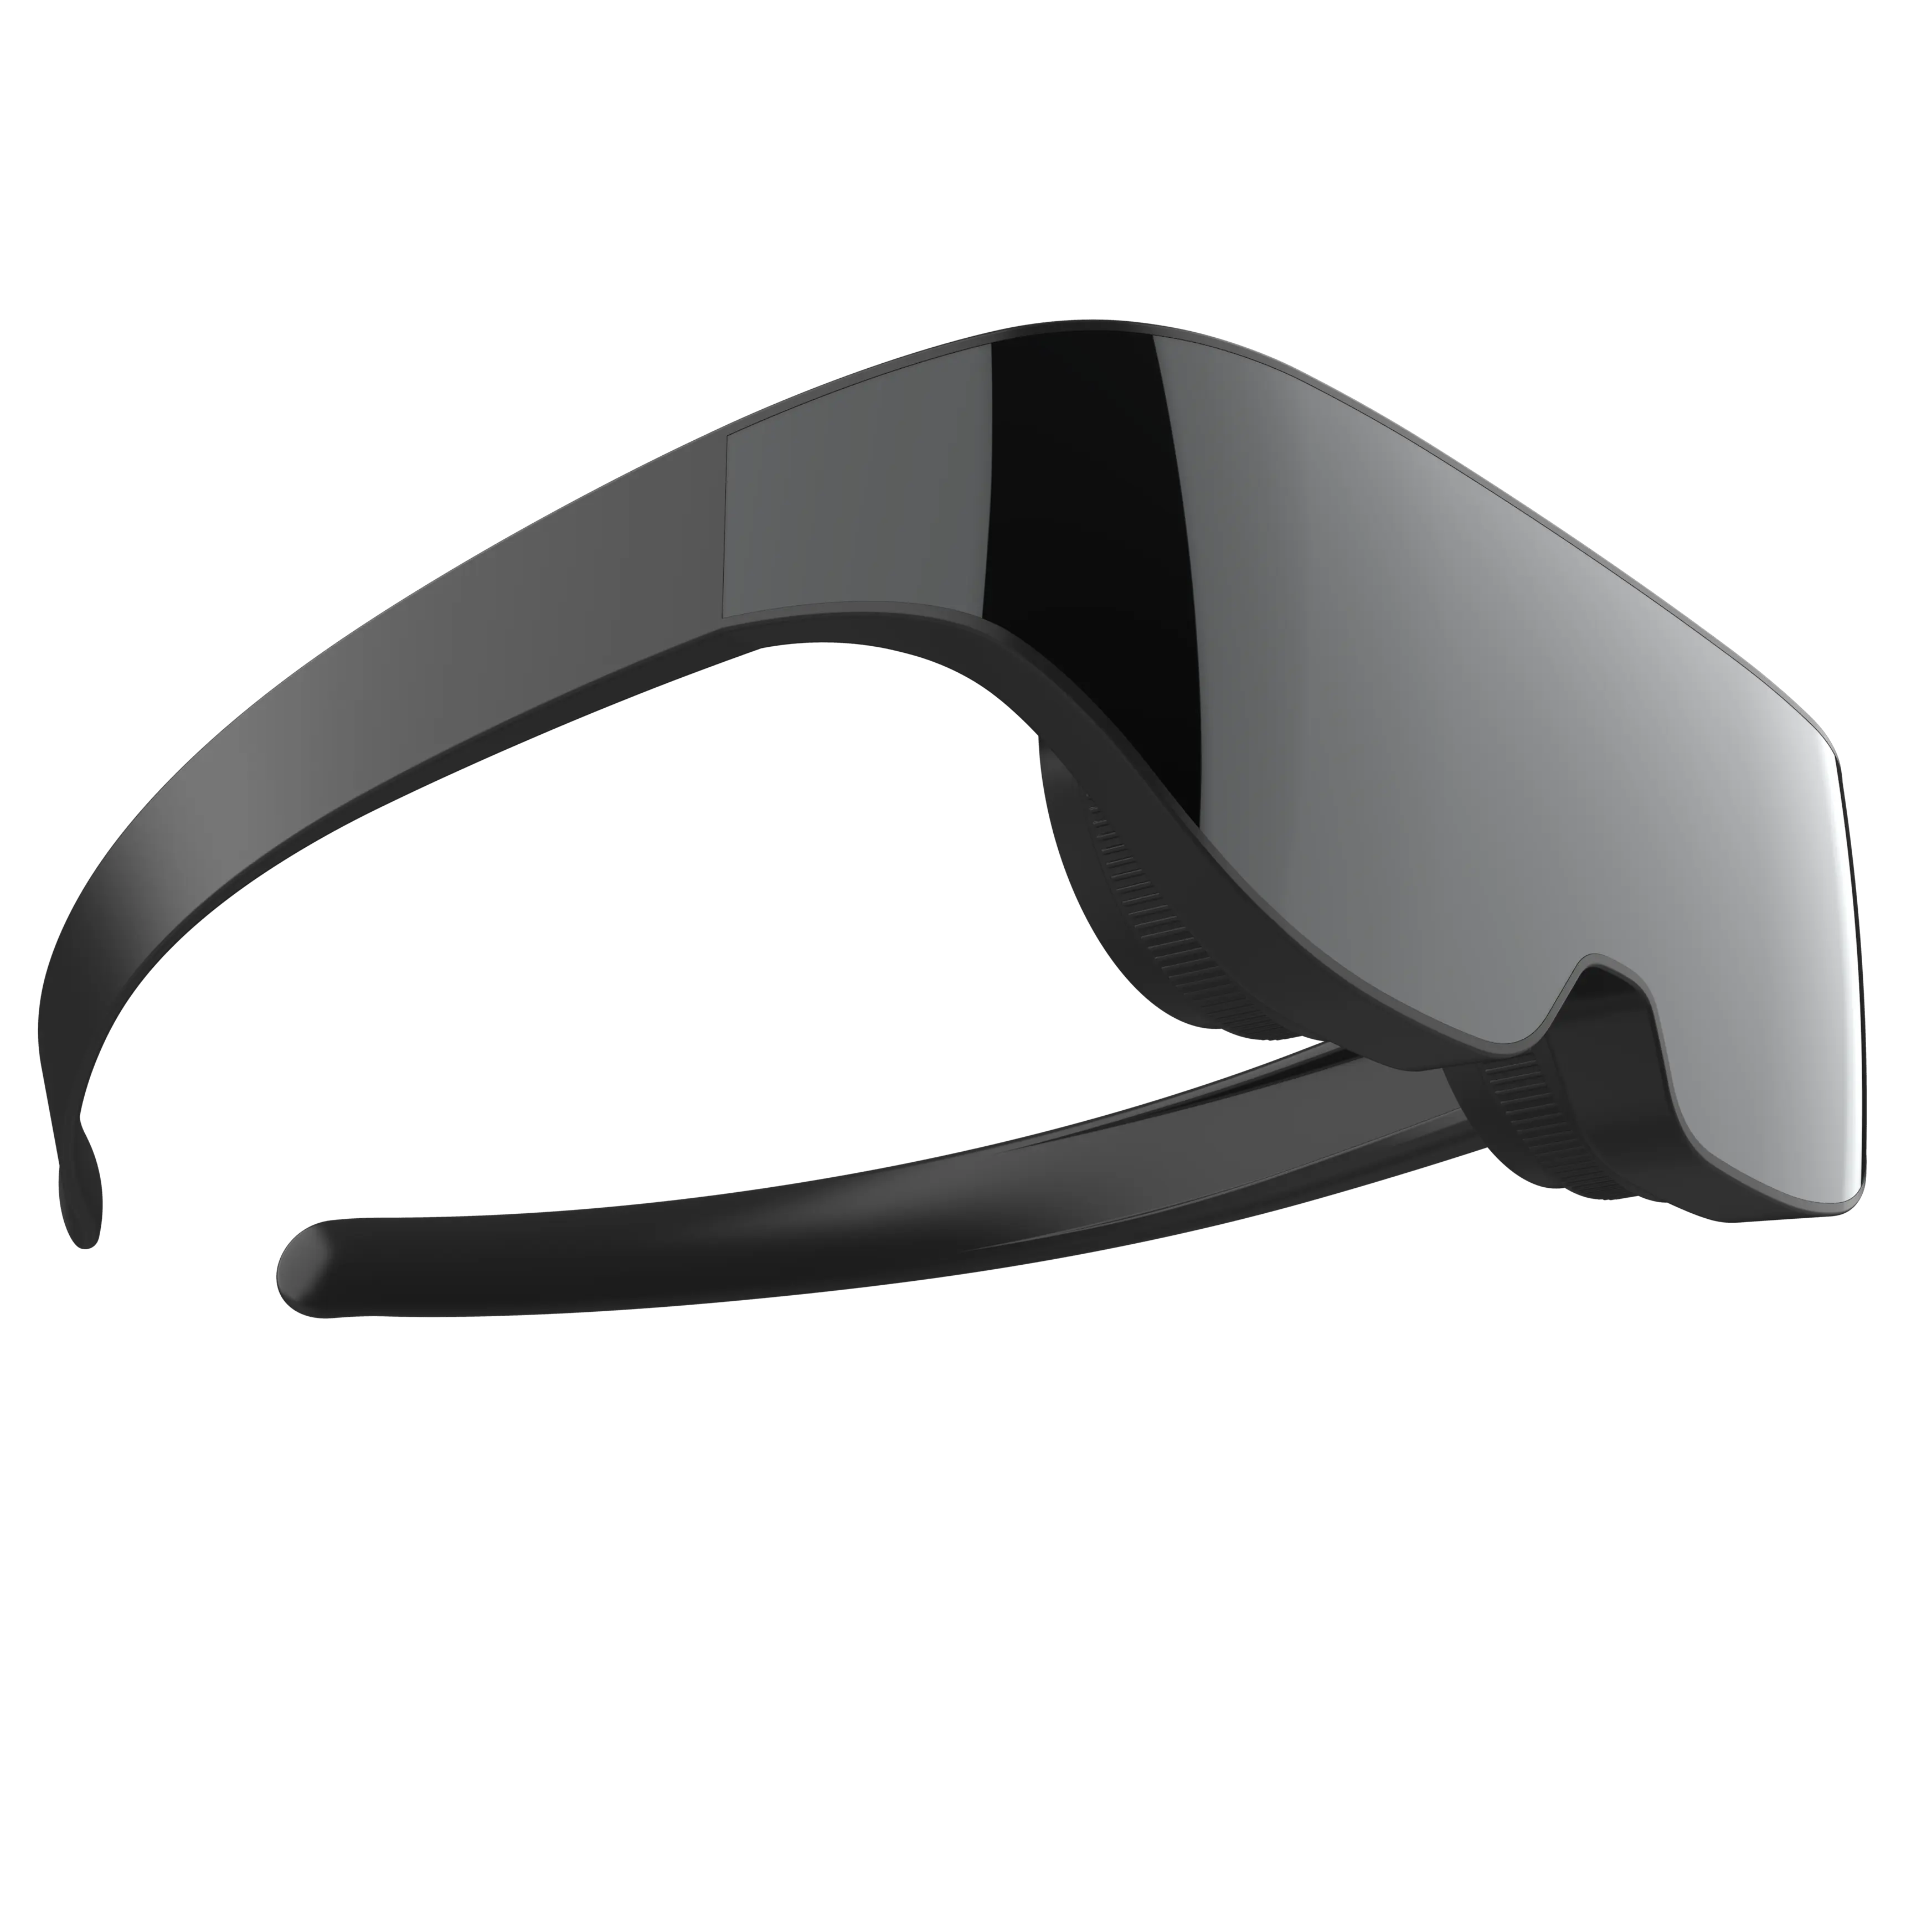 VR SHINECON nuevo diseño cine privado 3D pantalla gigante ultra-delgada gafas VR